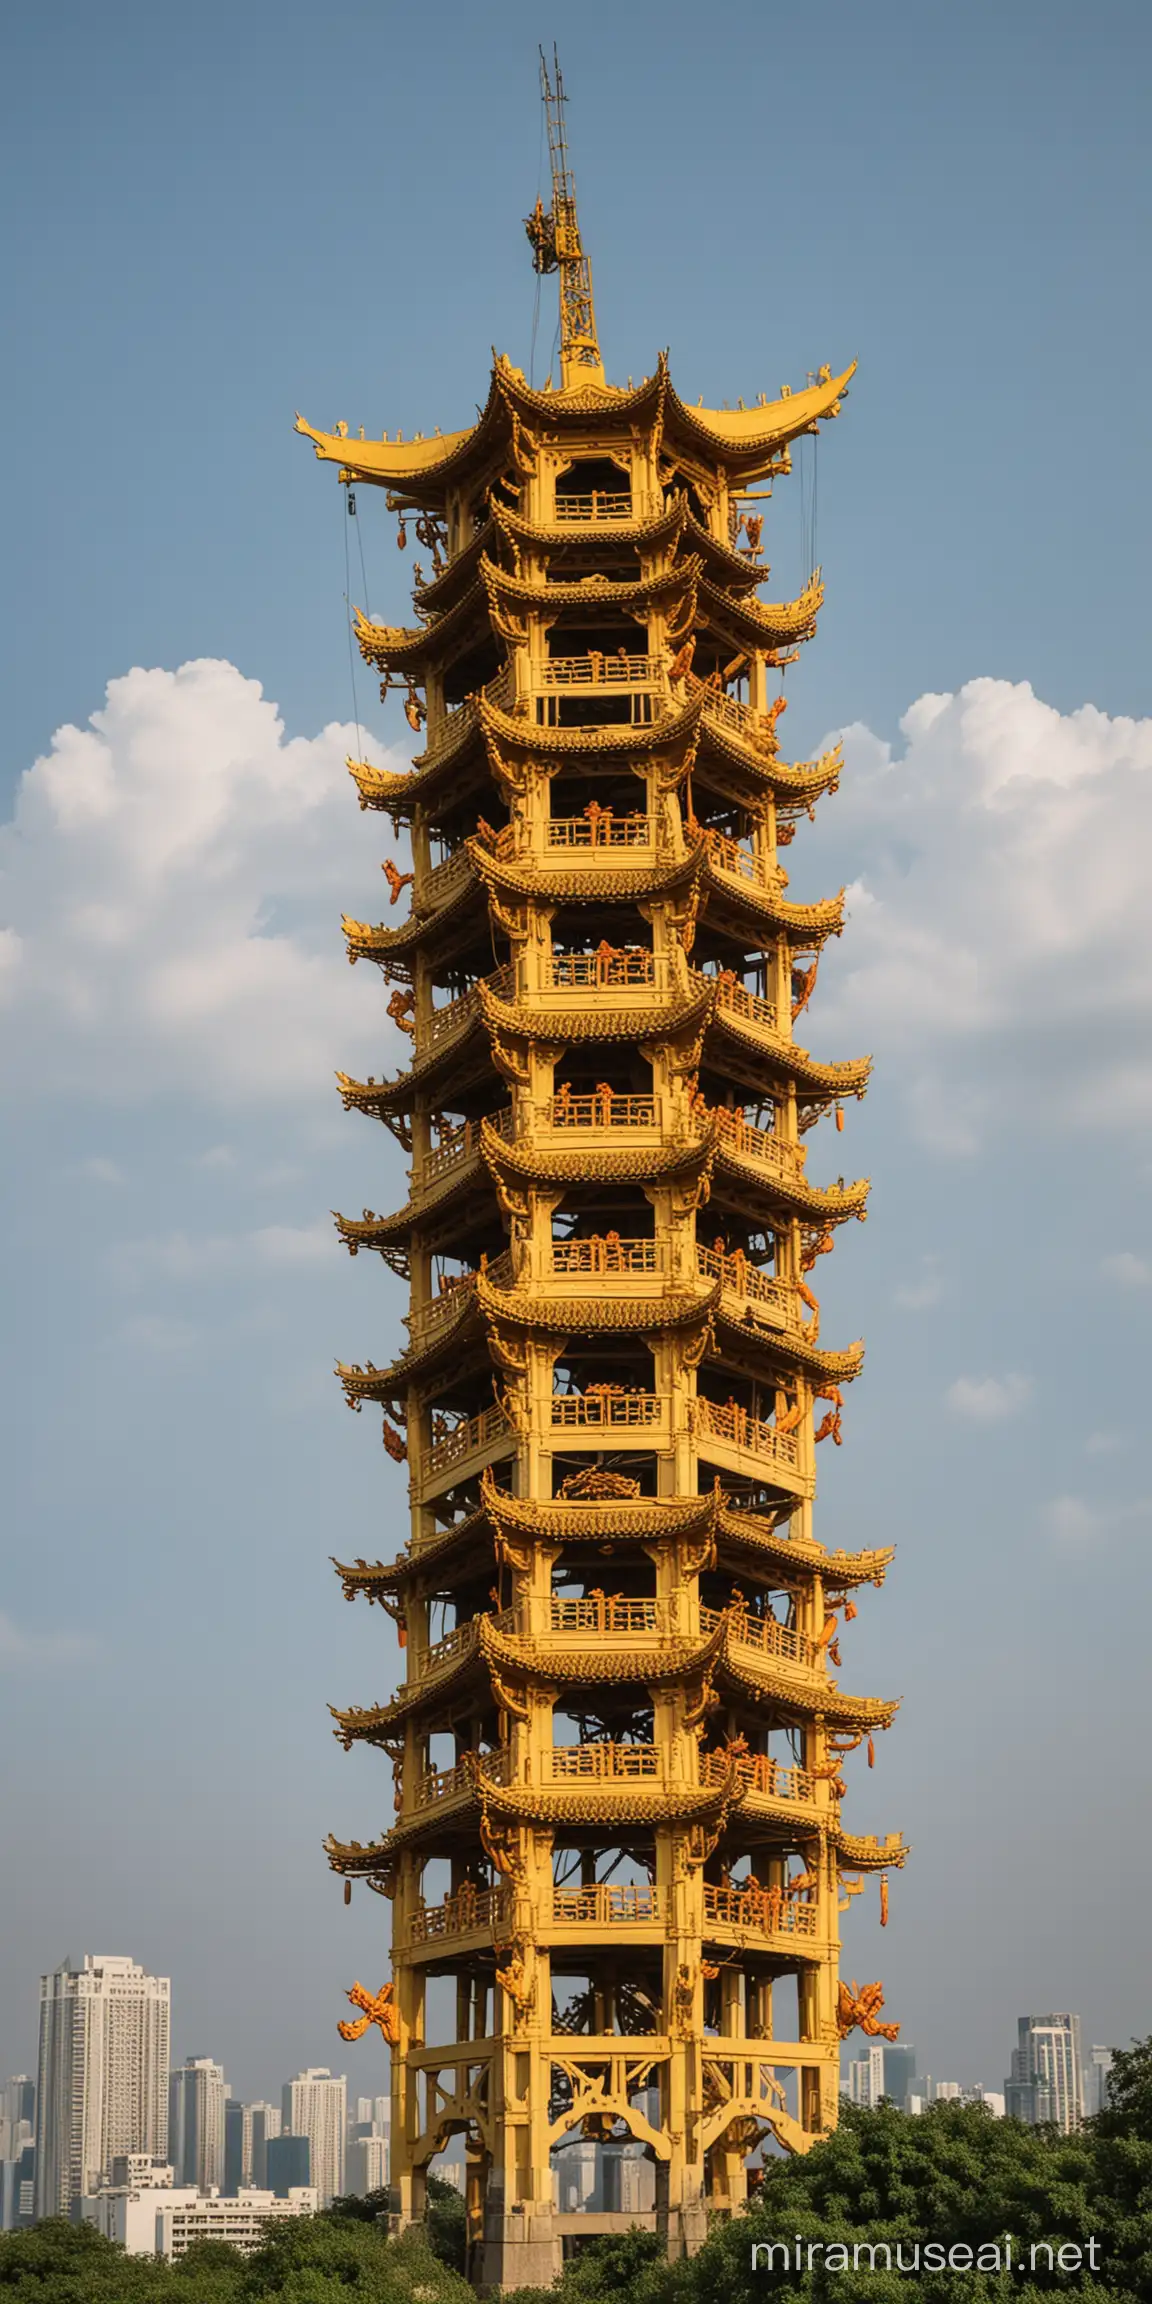 Li Bai Laughing at the Garlic Crayfish Crawling on Yellow Crane Tower